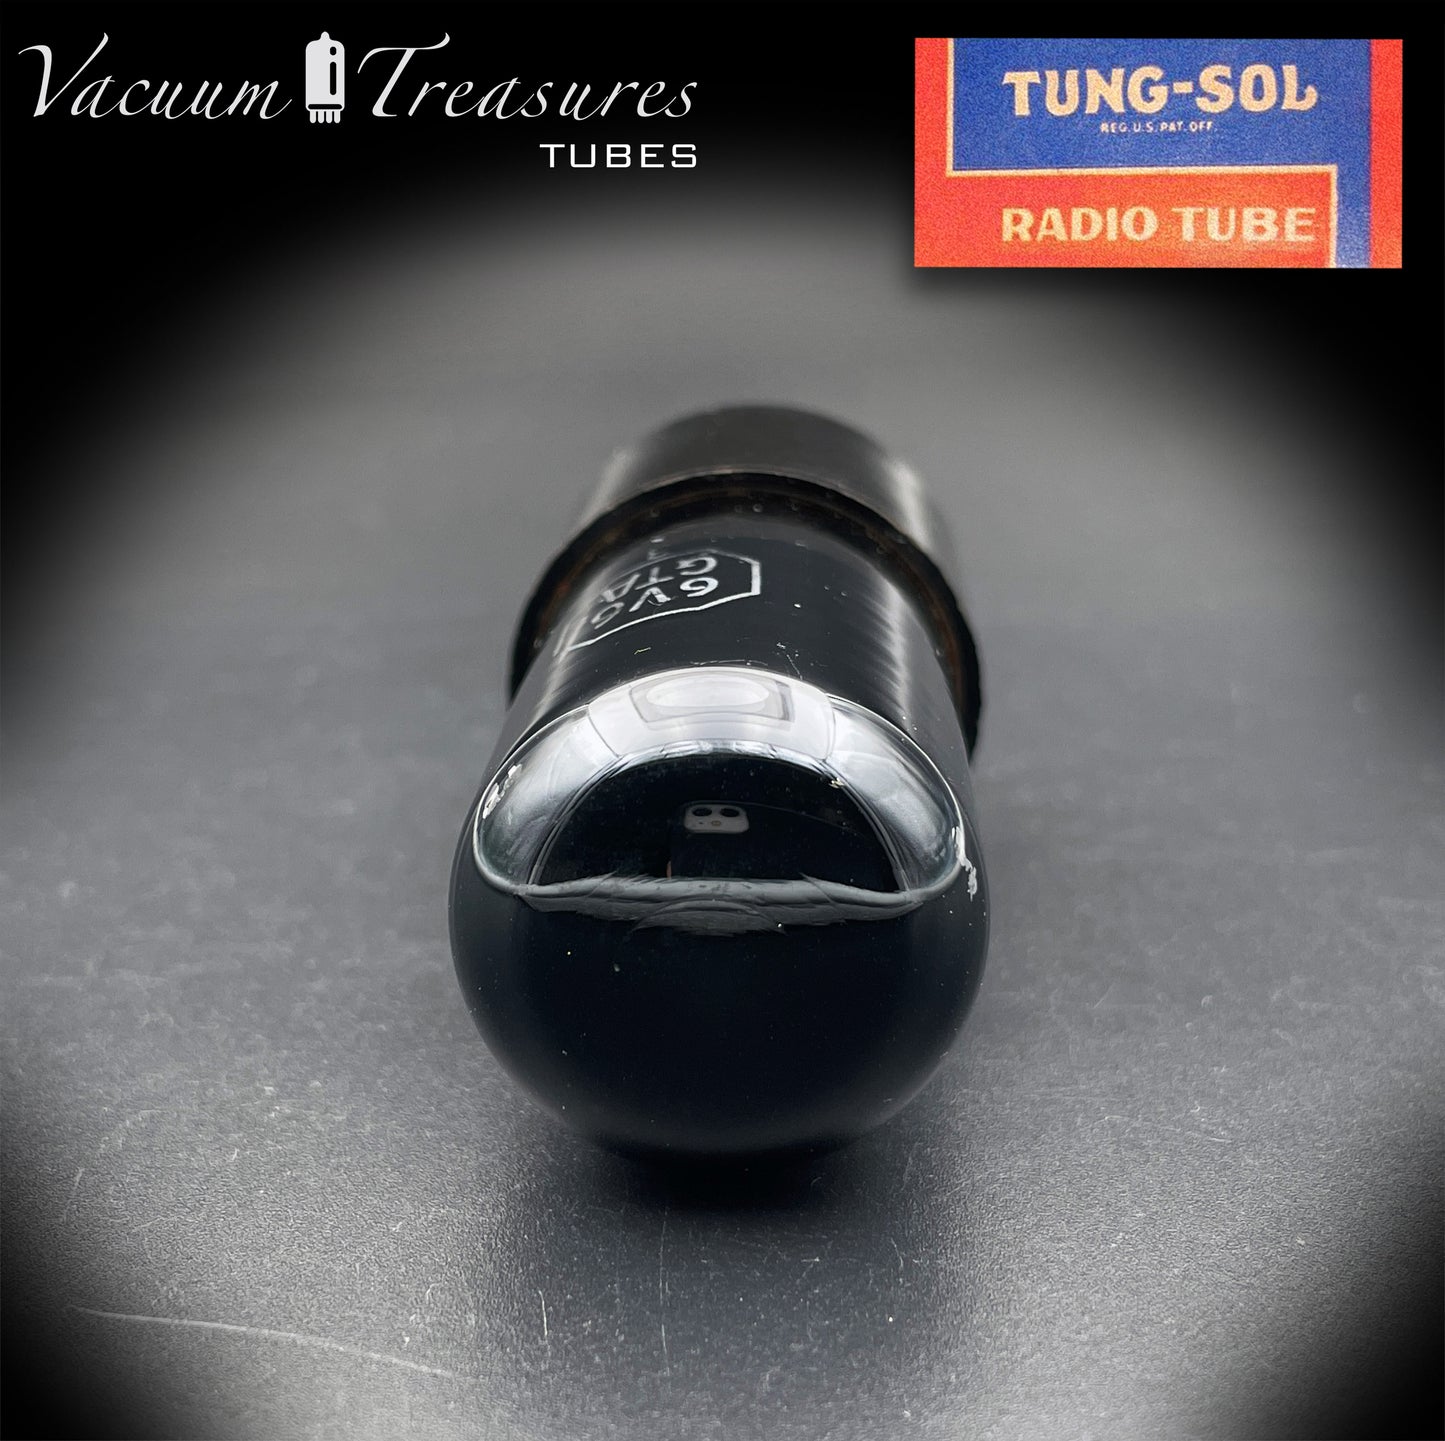 6V6 GTA TUNG-SOL ブラック ガラス D ゲッター テスト済みチューブ 米国製